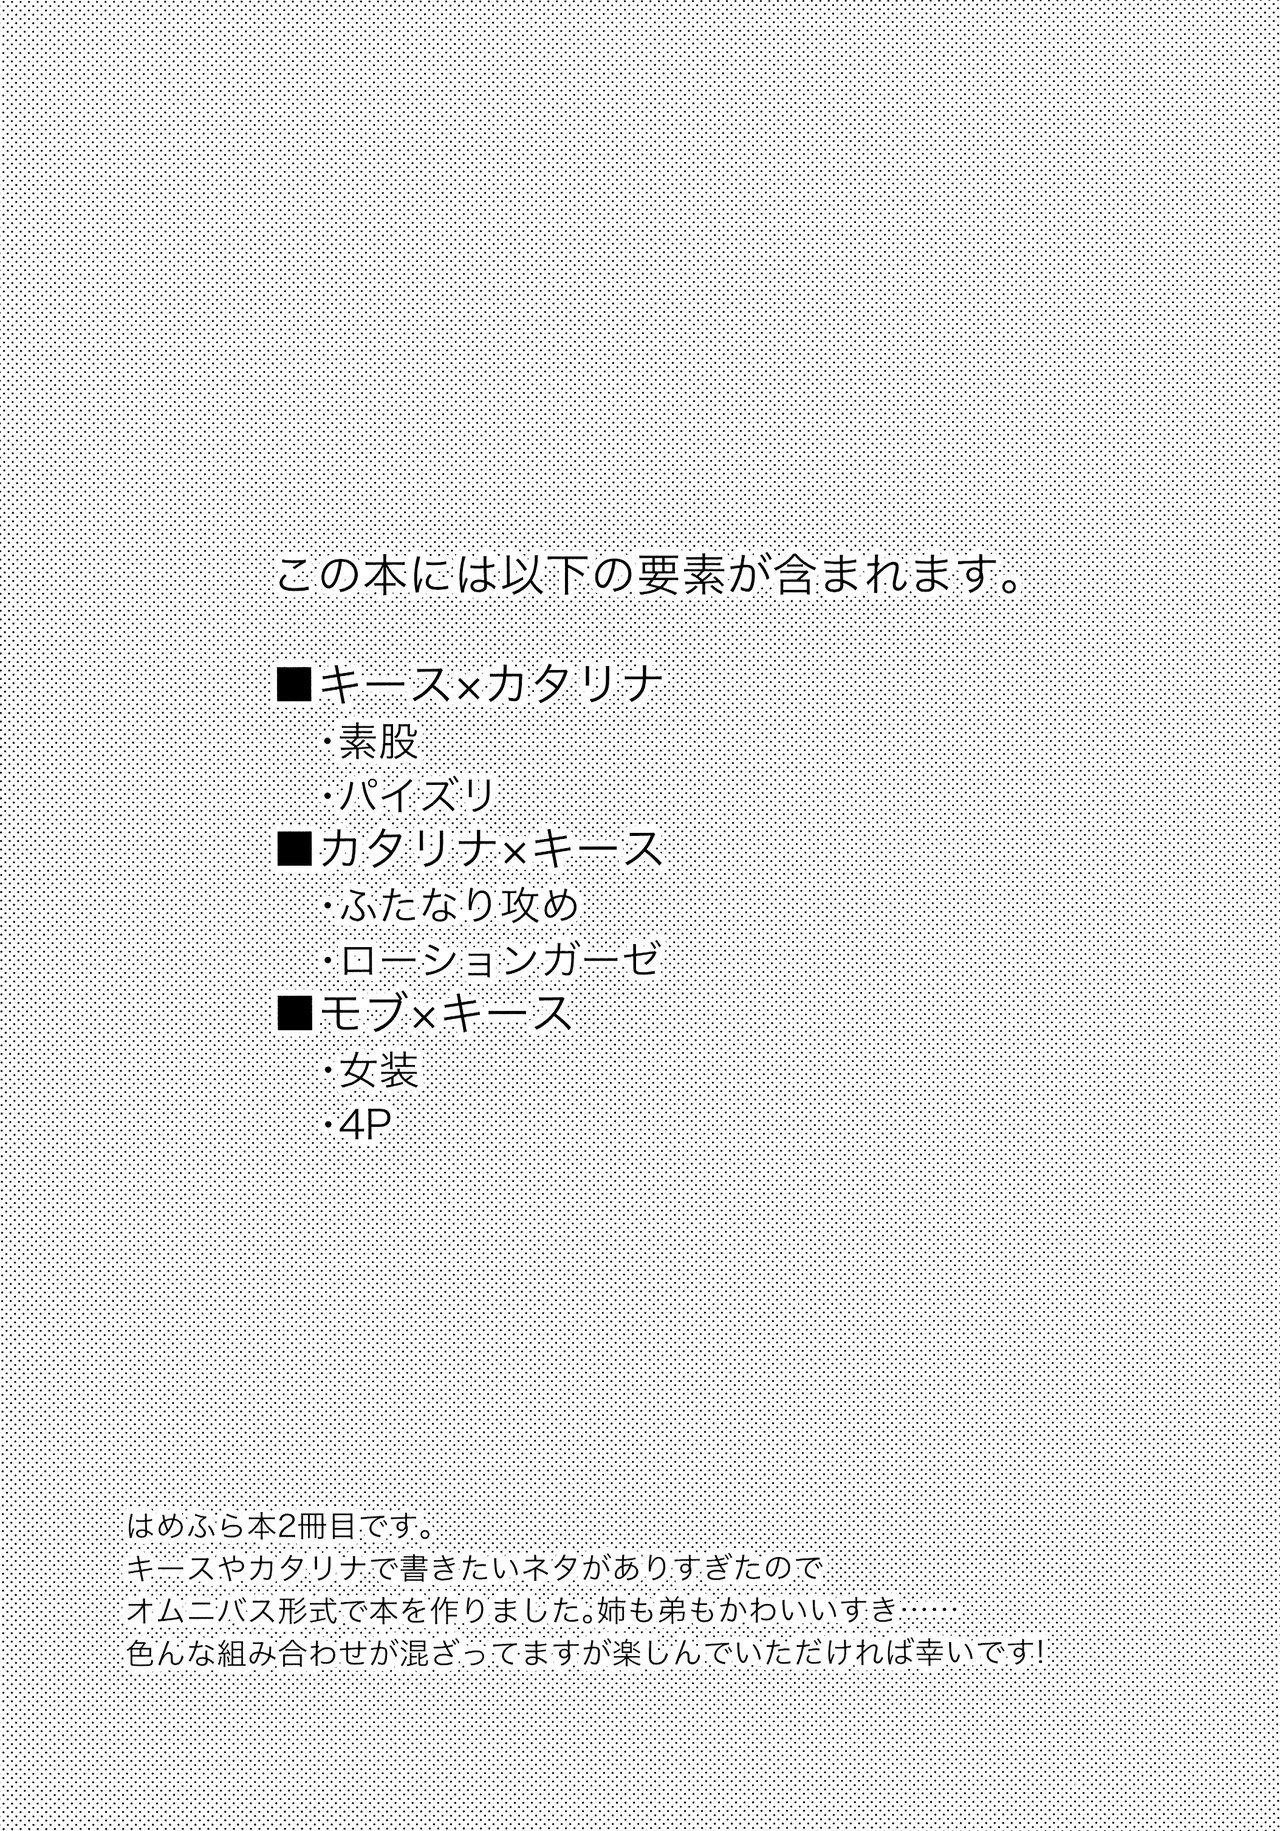 Bubble Butt Class Kyoudai no Etchi na Hon - Otome game no hametsu flag shika nai akuyaku reijou ni tensei shiteshimatta... Off - Page 5